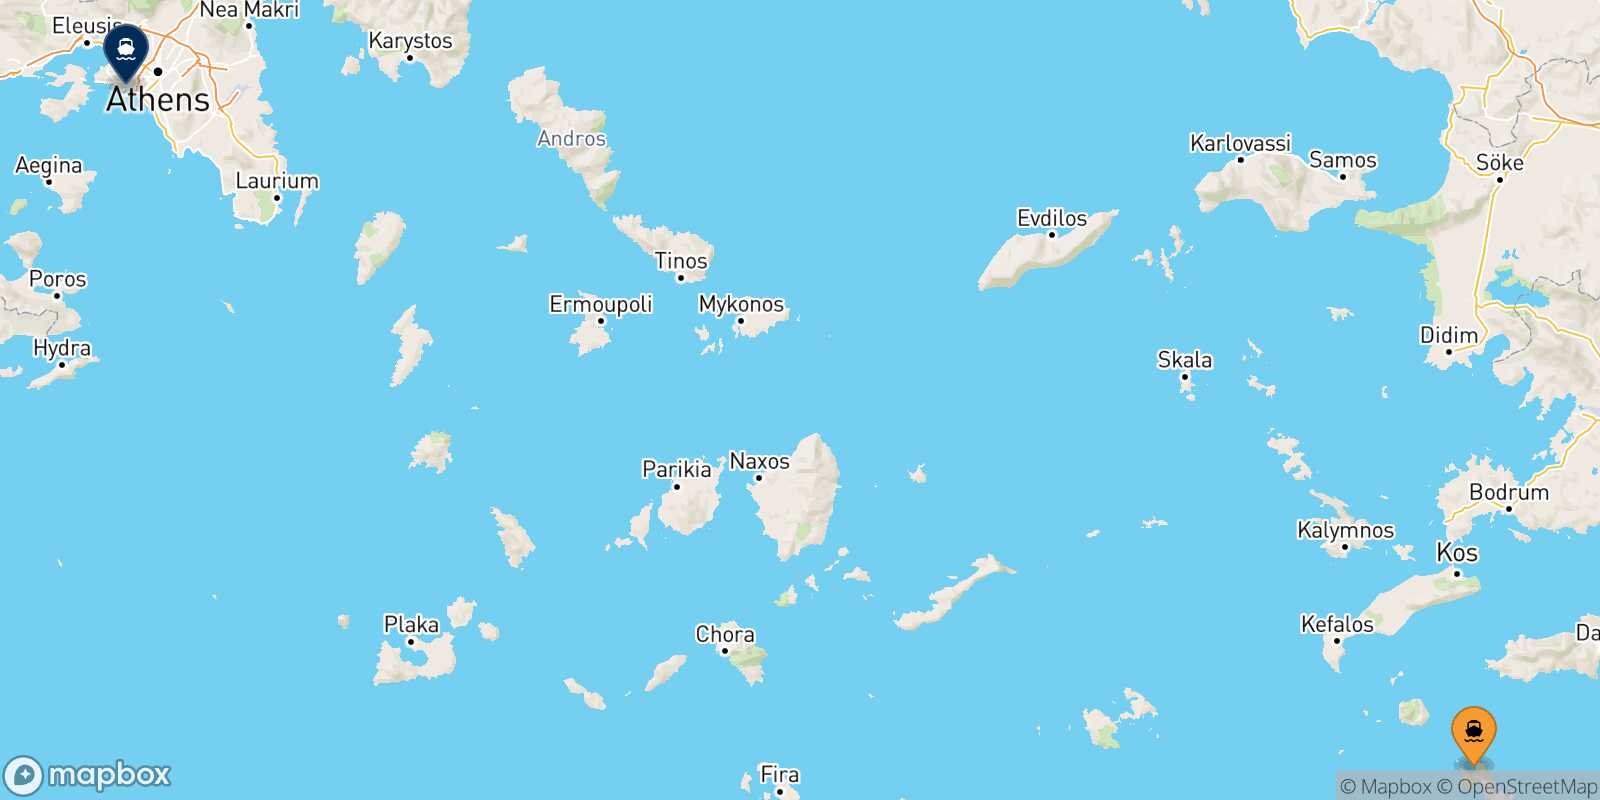 Tilos Piraeus route map